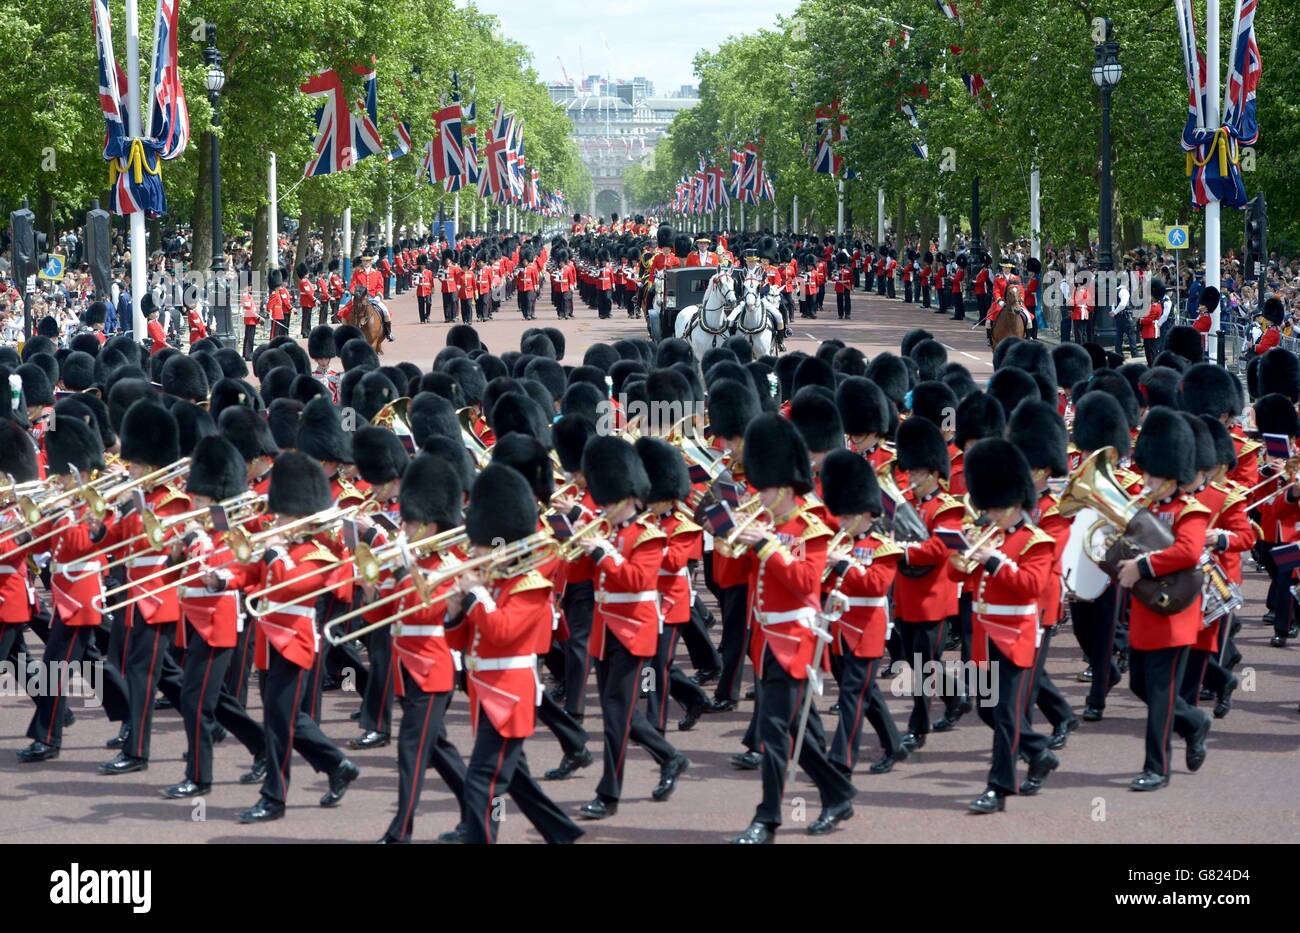 Les groupes se sont massés pendant la procession du Colonel's Review de Horse Guards Parade à Buckingham Palace, Londres, en prévision du Trooping the Color de la semaine prochaine, le défilé d'anniversaire annuel de la Reine. Banque D'Images